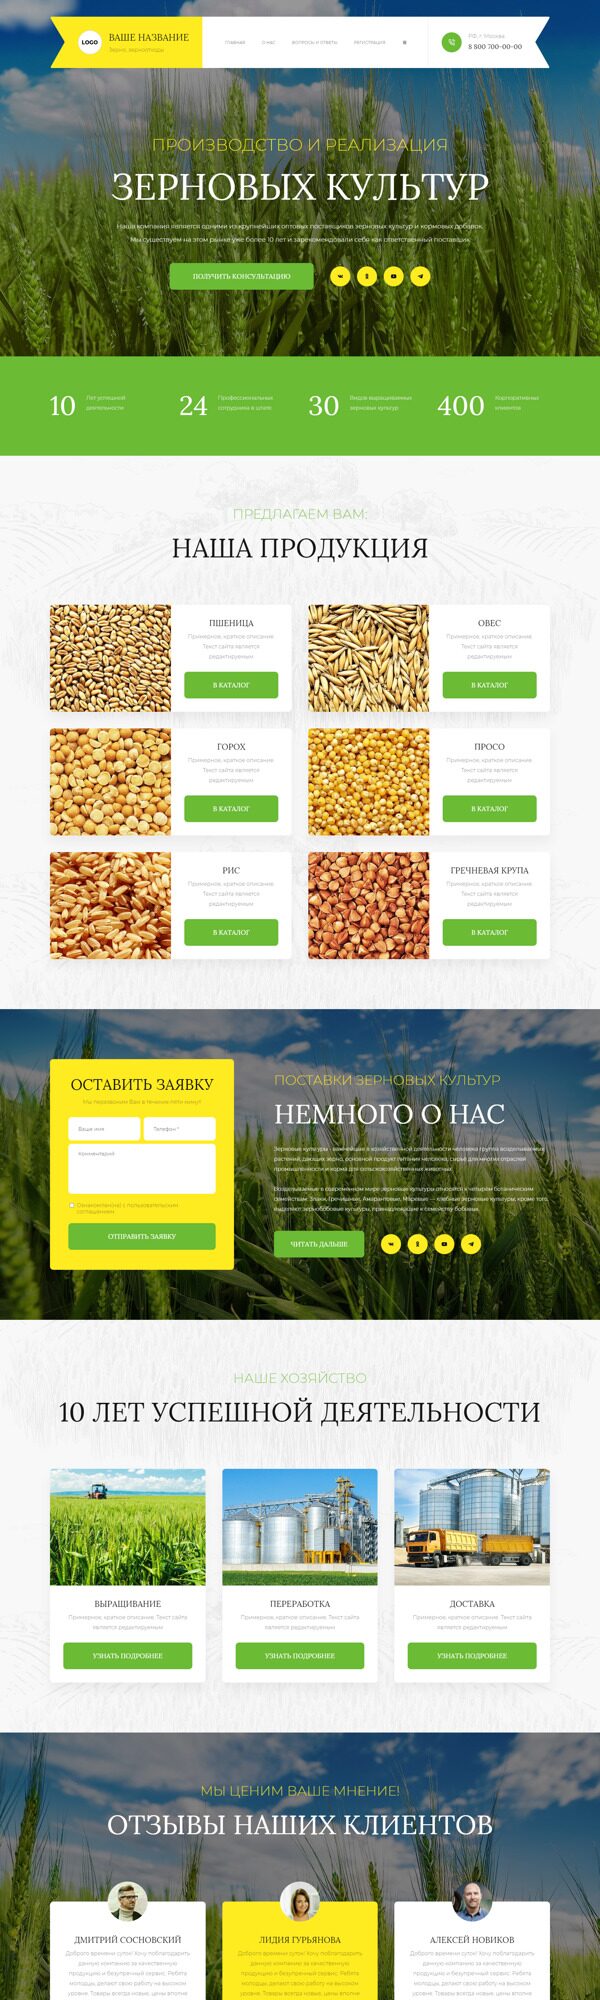 Готовый Сайт-Бизнес № 5230717 - Зерно, зерноотходы (Десктопная версия)